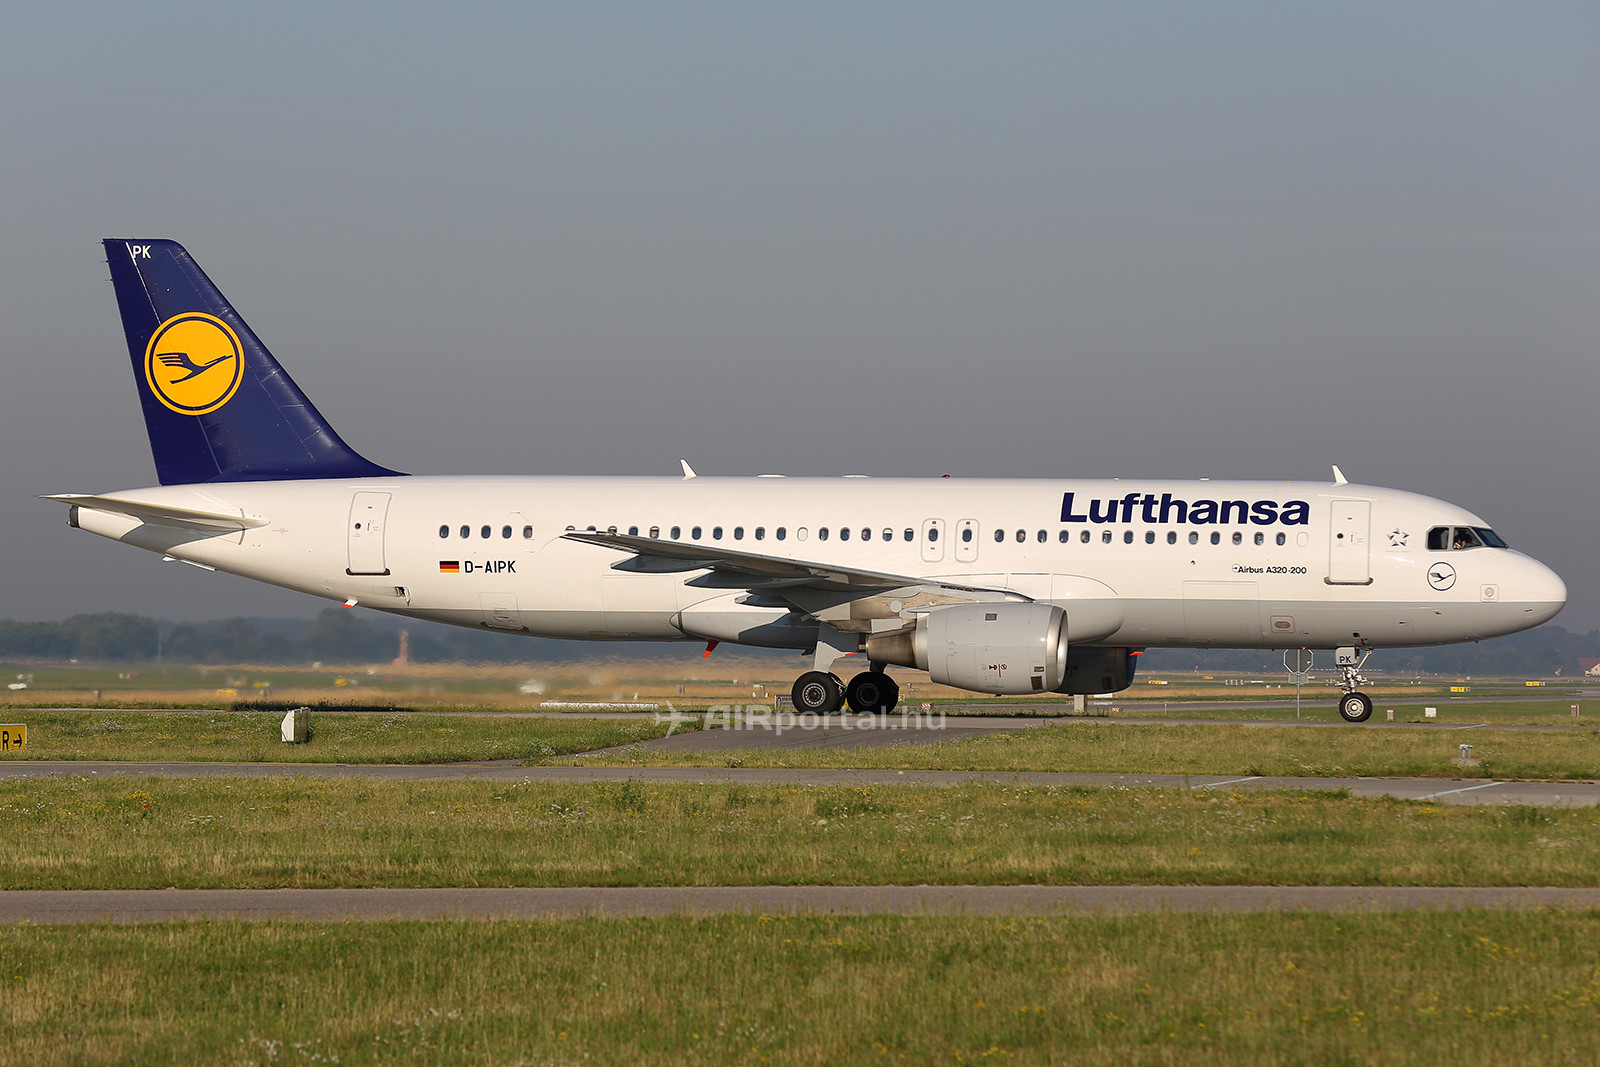 A Lufthansa D-AIPK lajstromjelű Airbus A320-211 típusú repülőgépe pár héttel az esetet megelőzően a müncheni repülőtéren. (Fotó: AIRportal.hu) | © AIRportal.hu